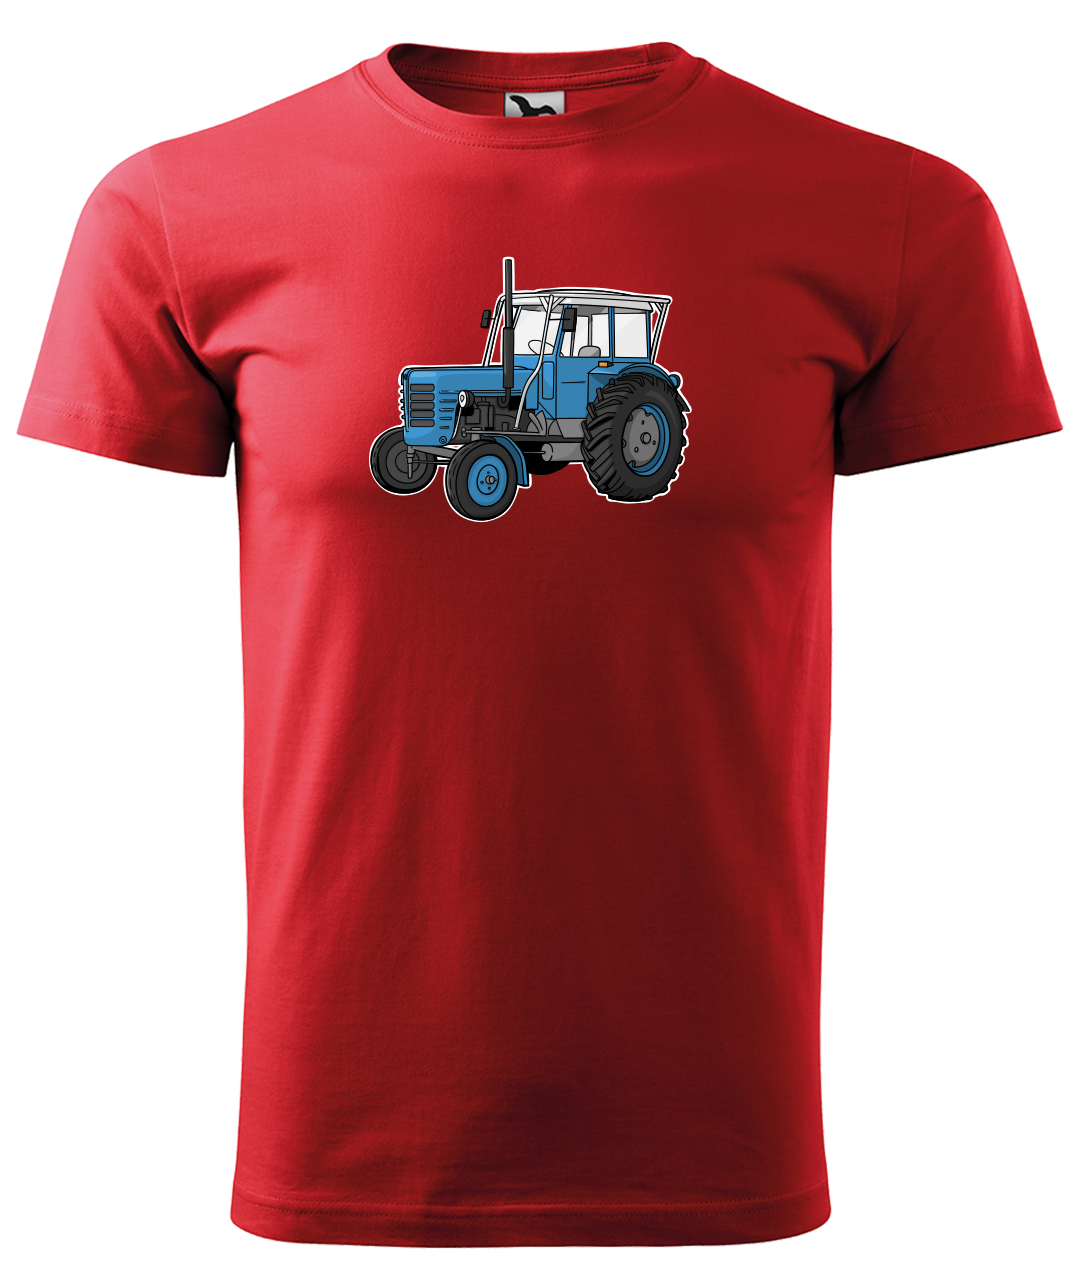 Dětské tričko s traktorem - Starý traktor Velikost: 12 let / 158 cm, Barva: Červená (07)